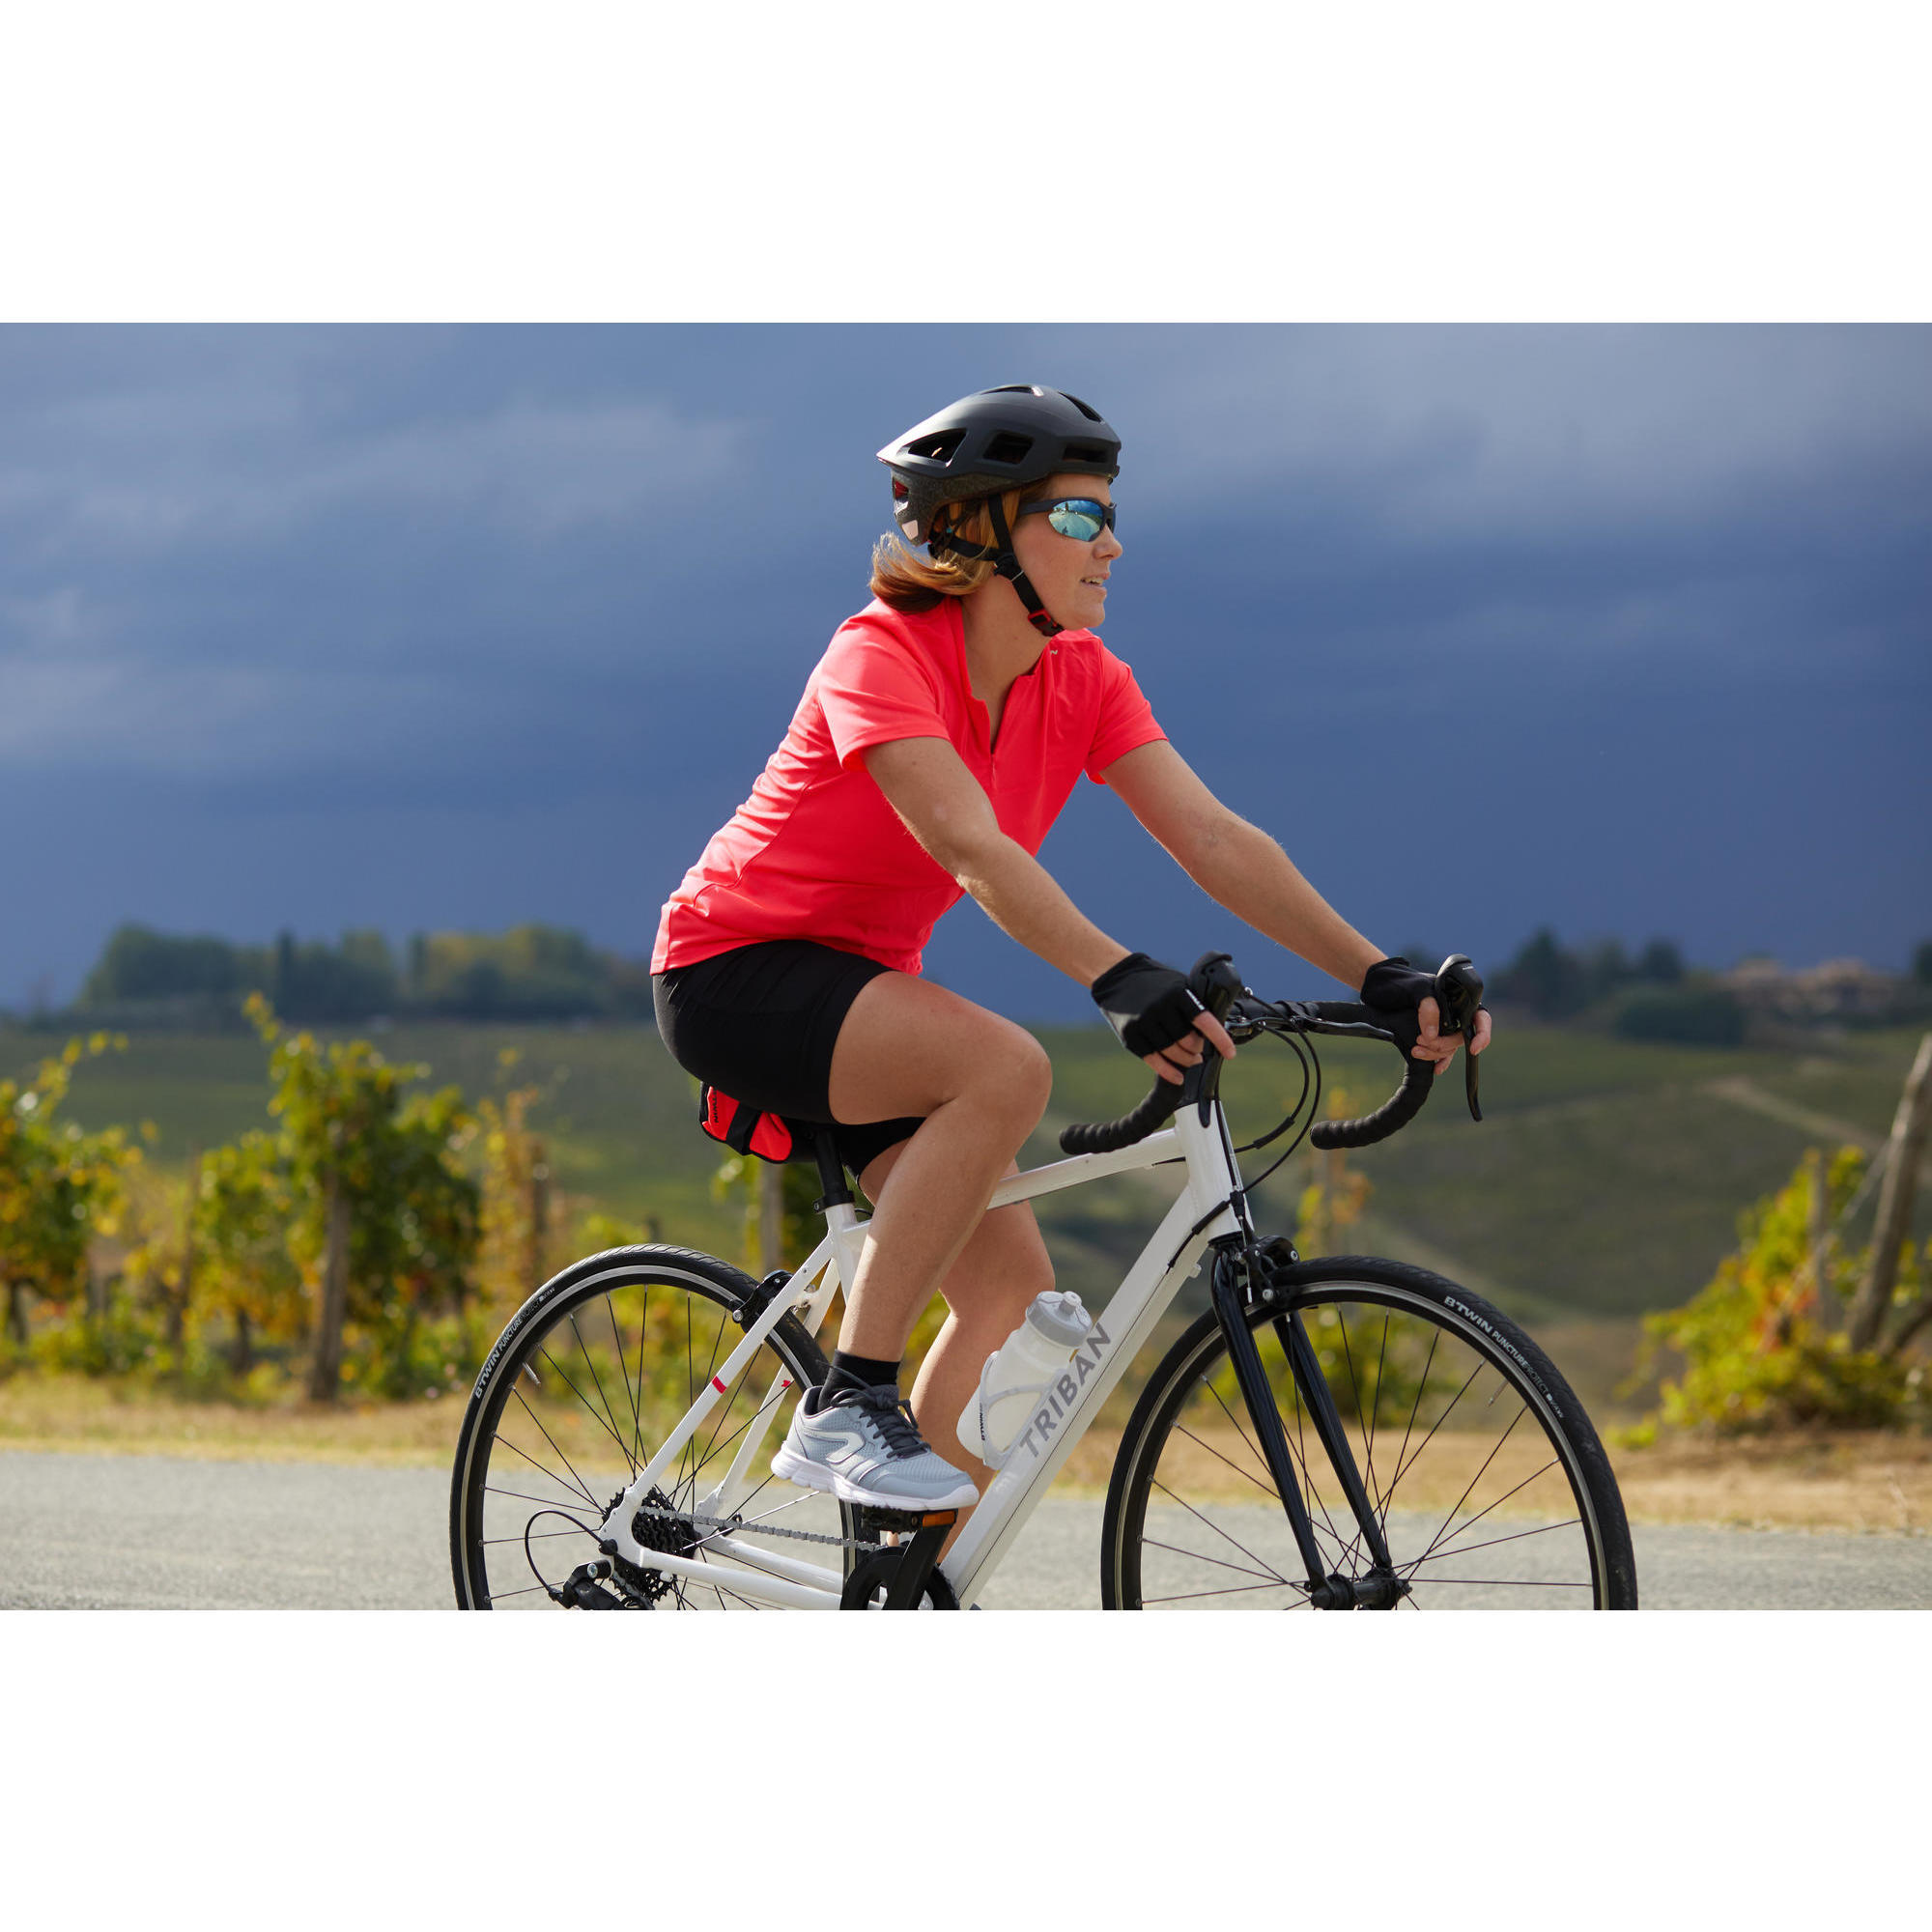 asda cycling shorts womens